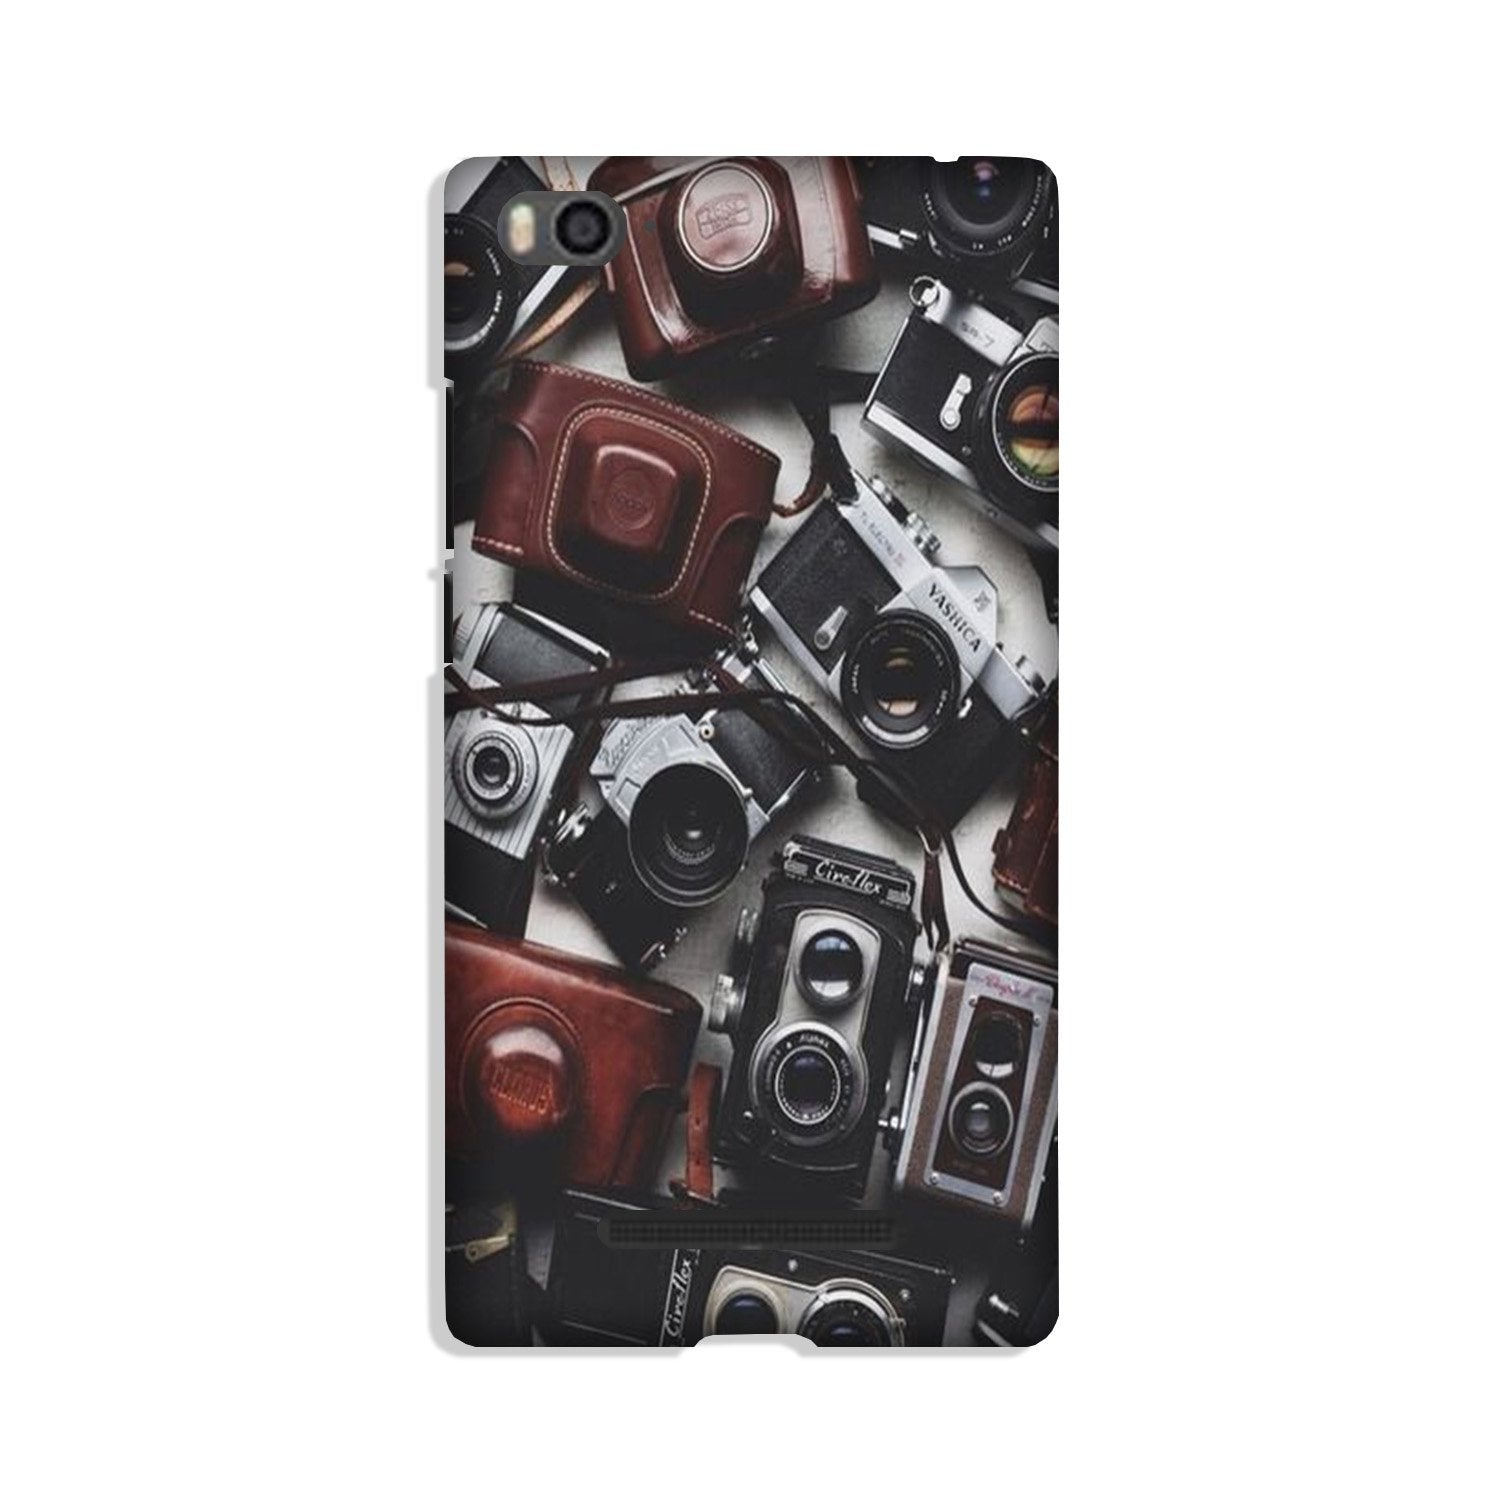 Cameras Case for Xiaomi Mi 4i